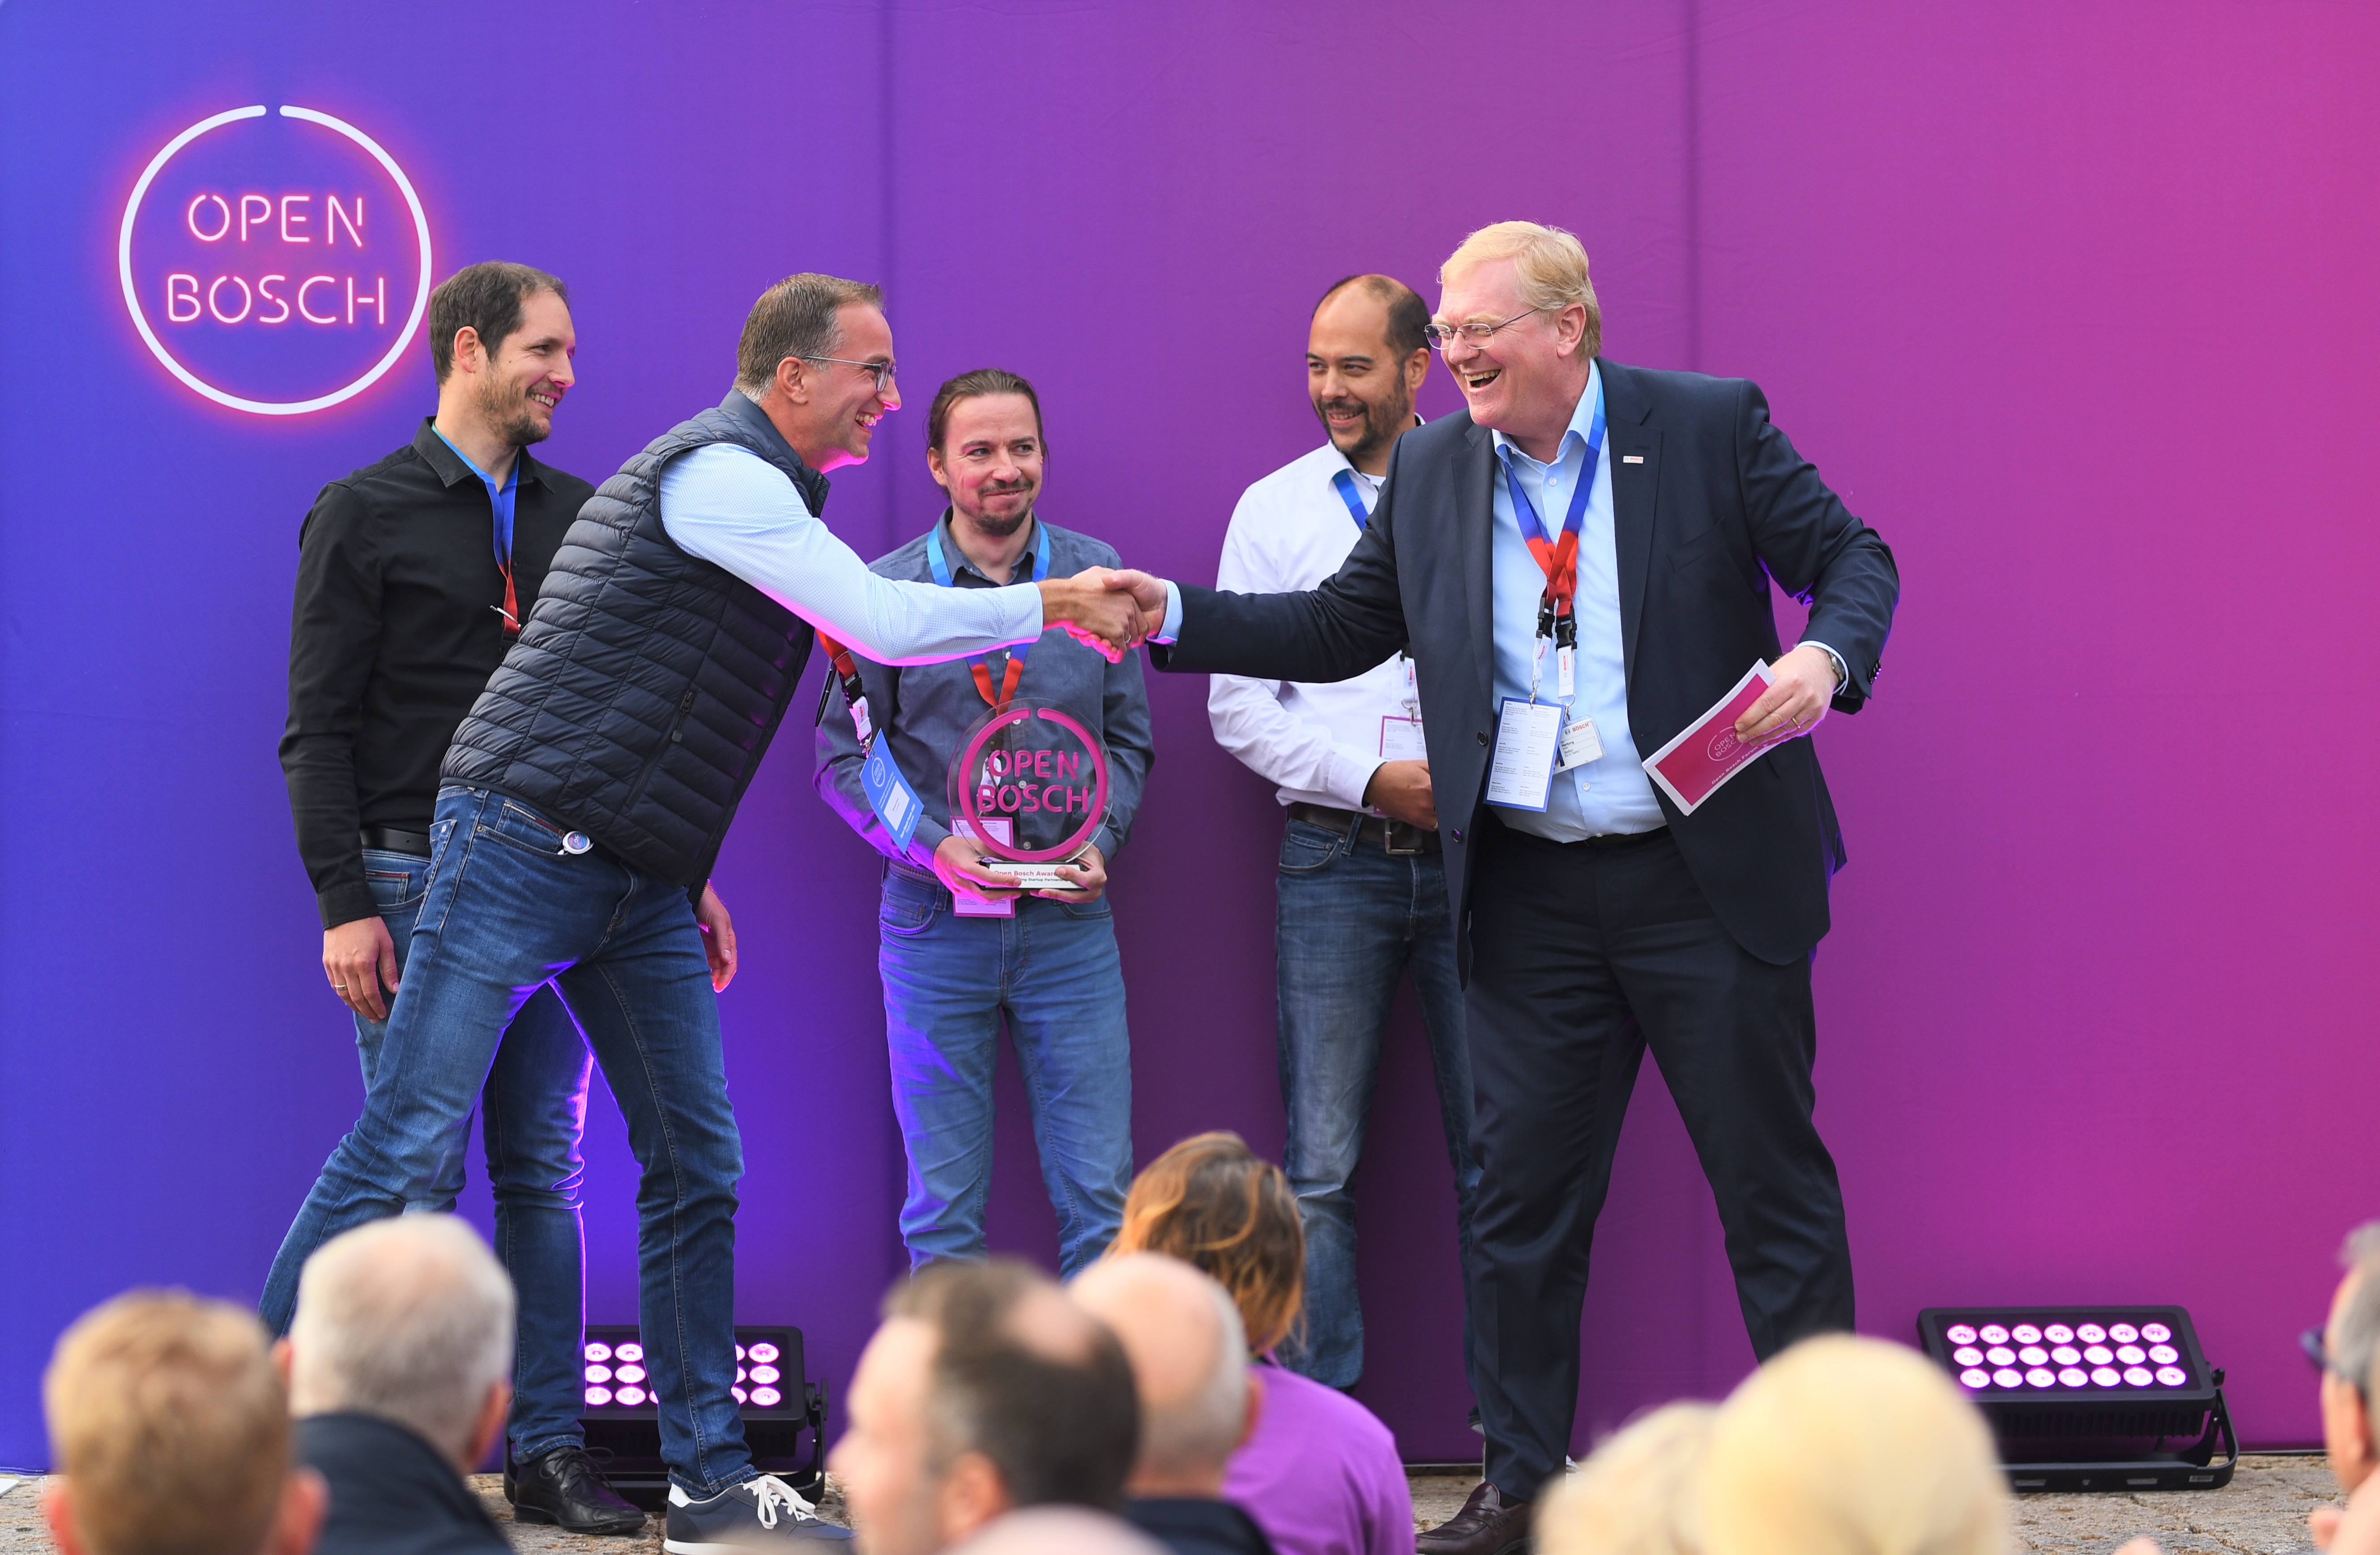 Open Bosch Award 2022 Winner on stage – Michael Kram (Vertreter des Bosch Projektes); Philipp Crocoll (COO), Julius Ziegler (CTO) and Henning Lategahn (CEO Atlatec); Dr. Stefan Hartung (Vorsitzender der Geschäftsführung der Robert Bosch GmbH)